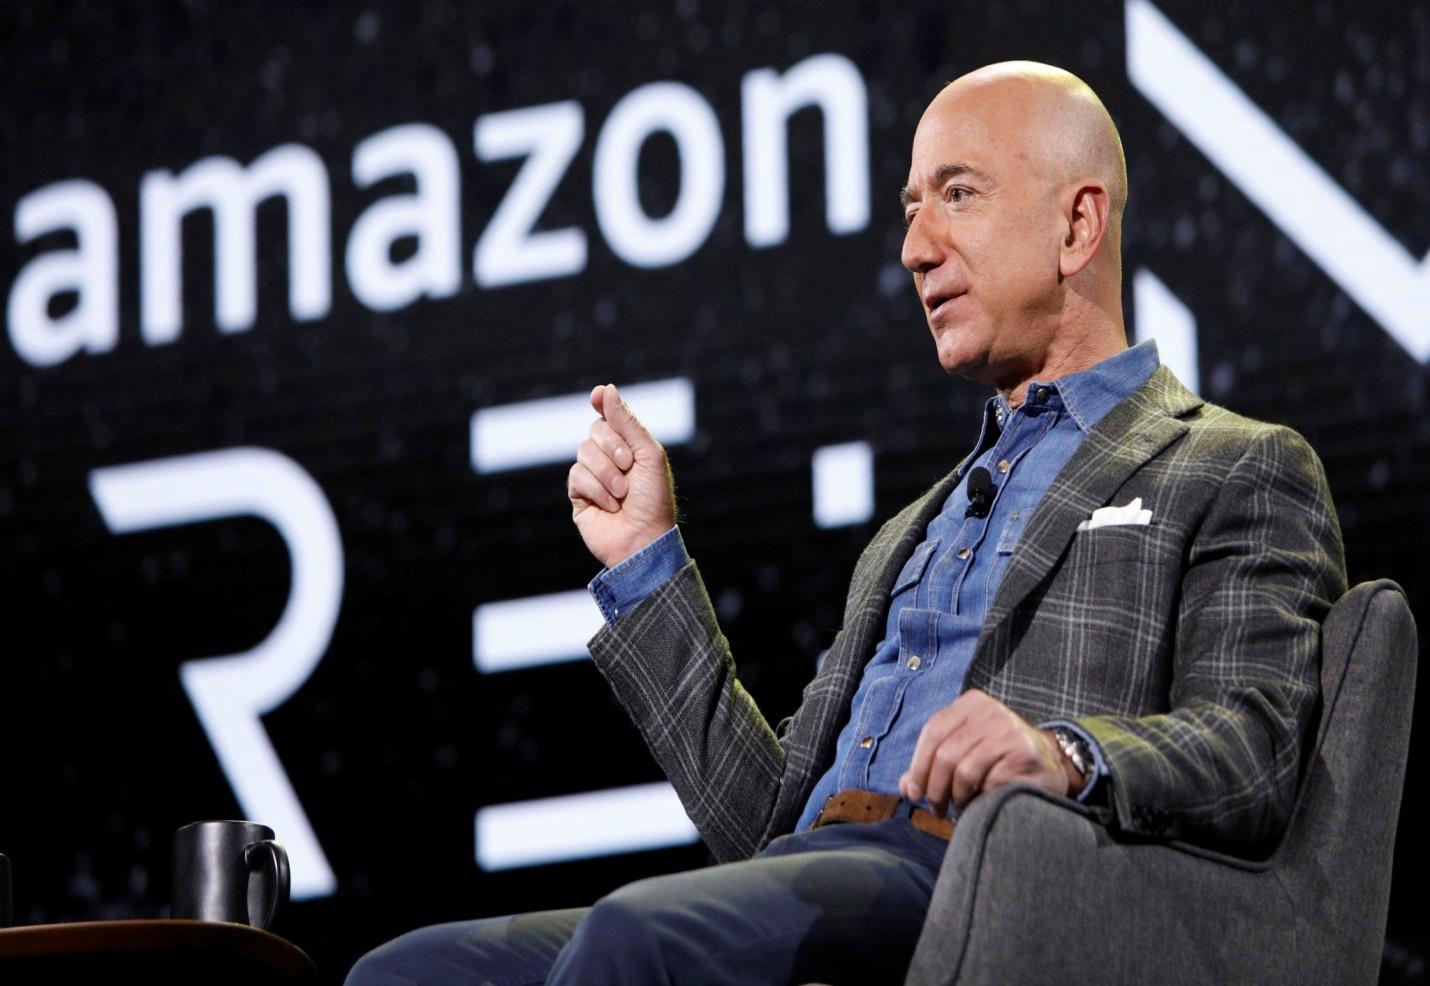 Bạn gái của tỉ phú Jeff Bezos: Anh ấy dạy tôi bài học lớn nhất khi làm sếp, “hãy là người nói sau cùng” - Ảnh 2.